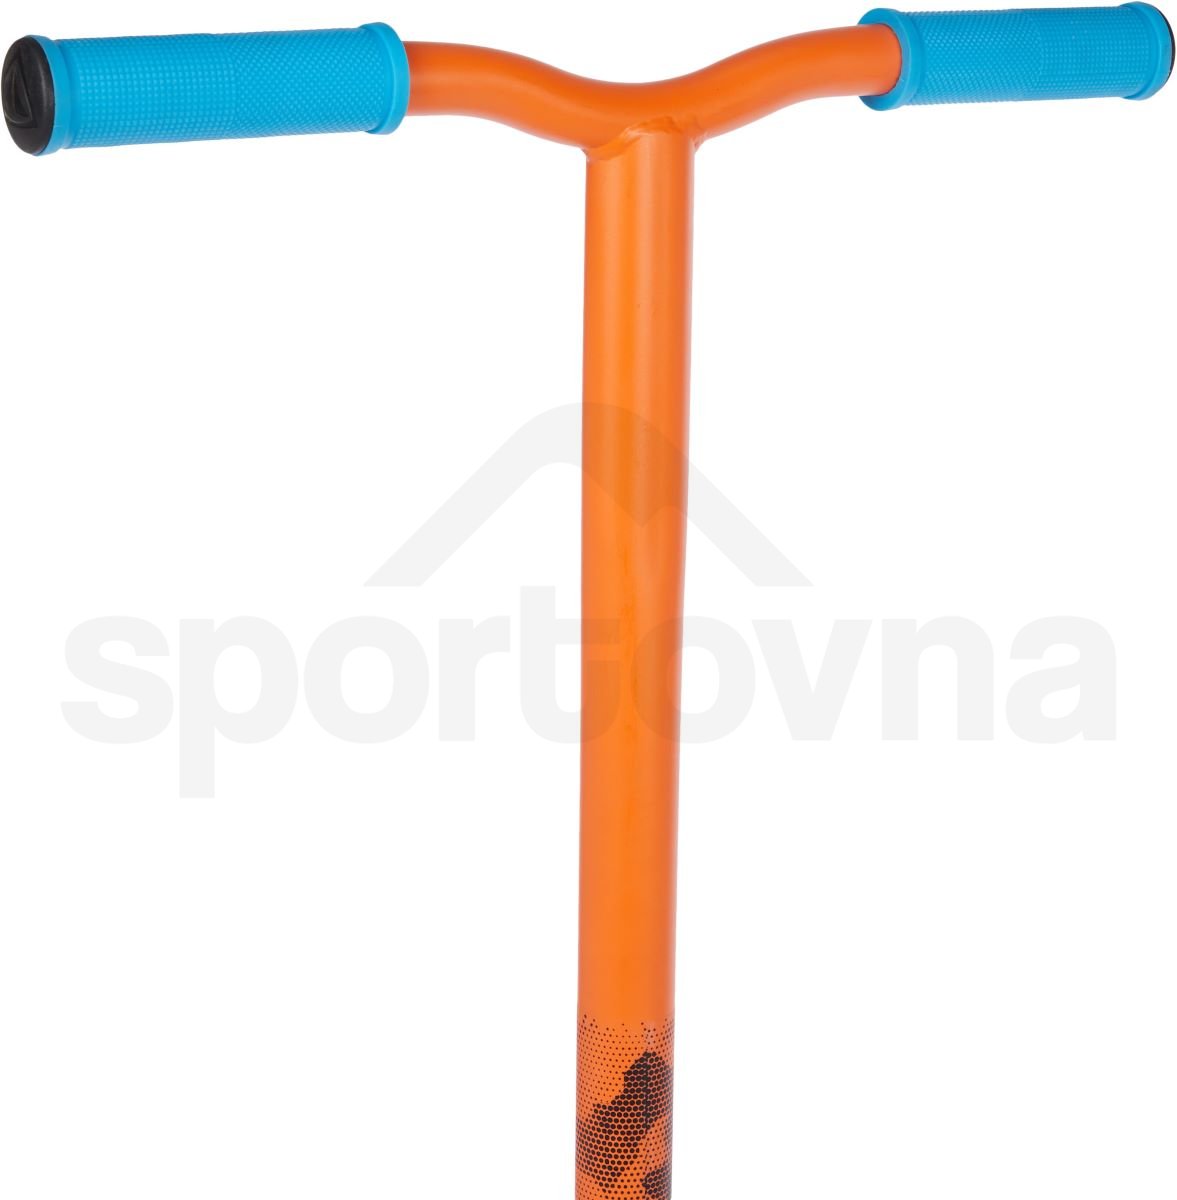 Koloběžka Firefly ST 110 - oranžová/modrá